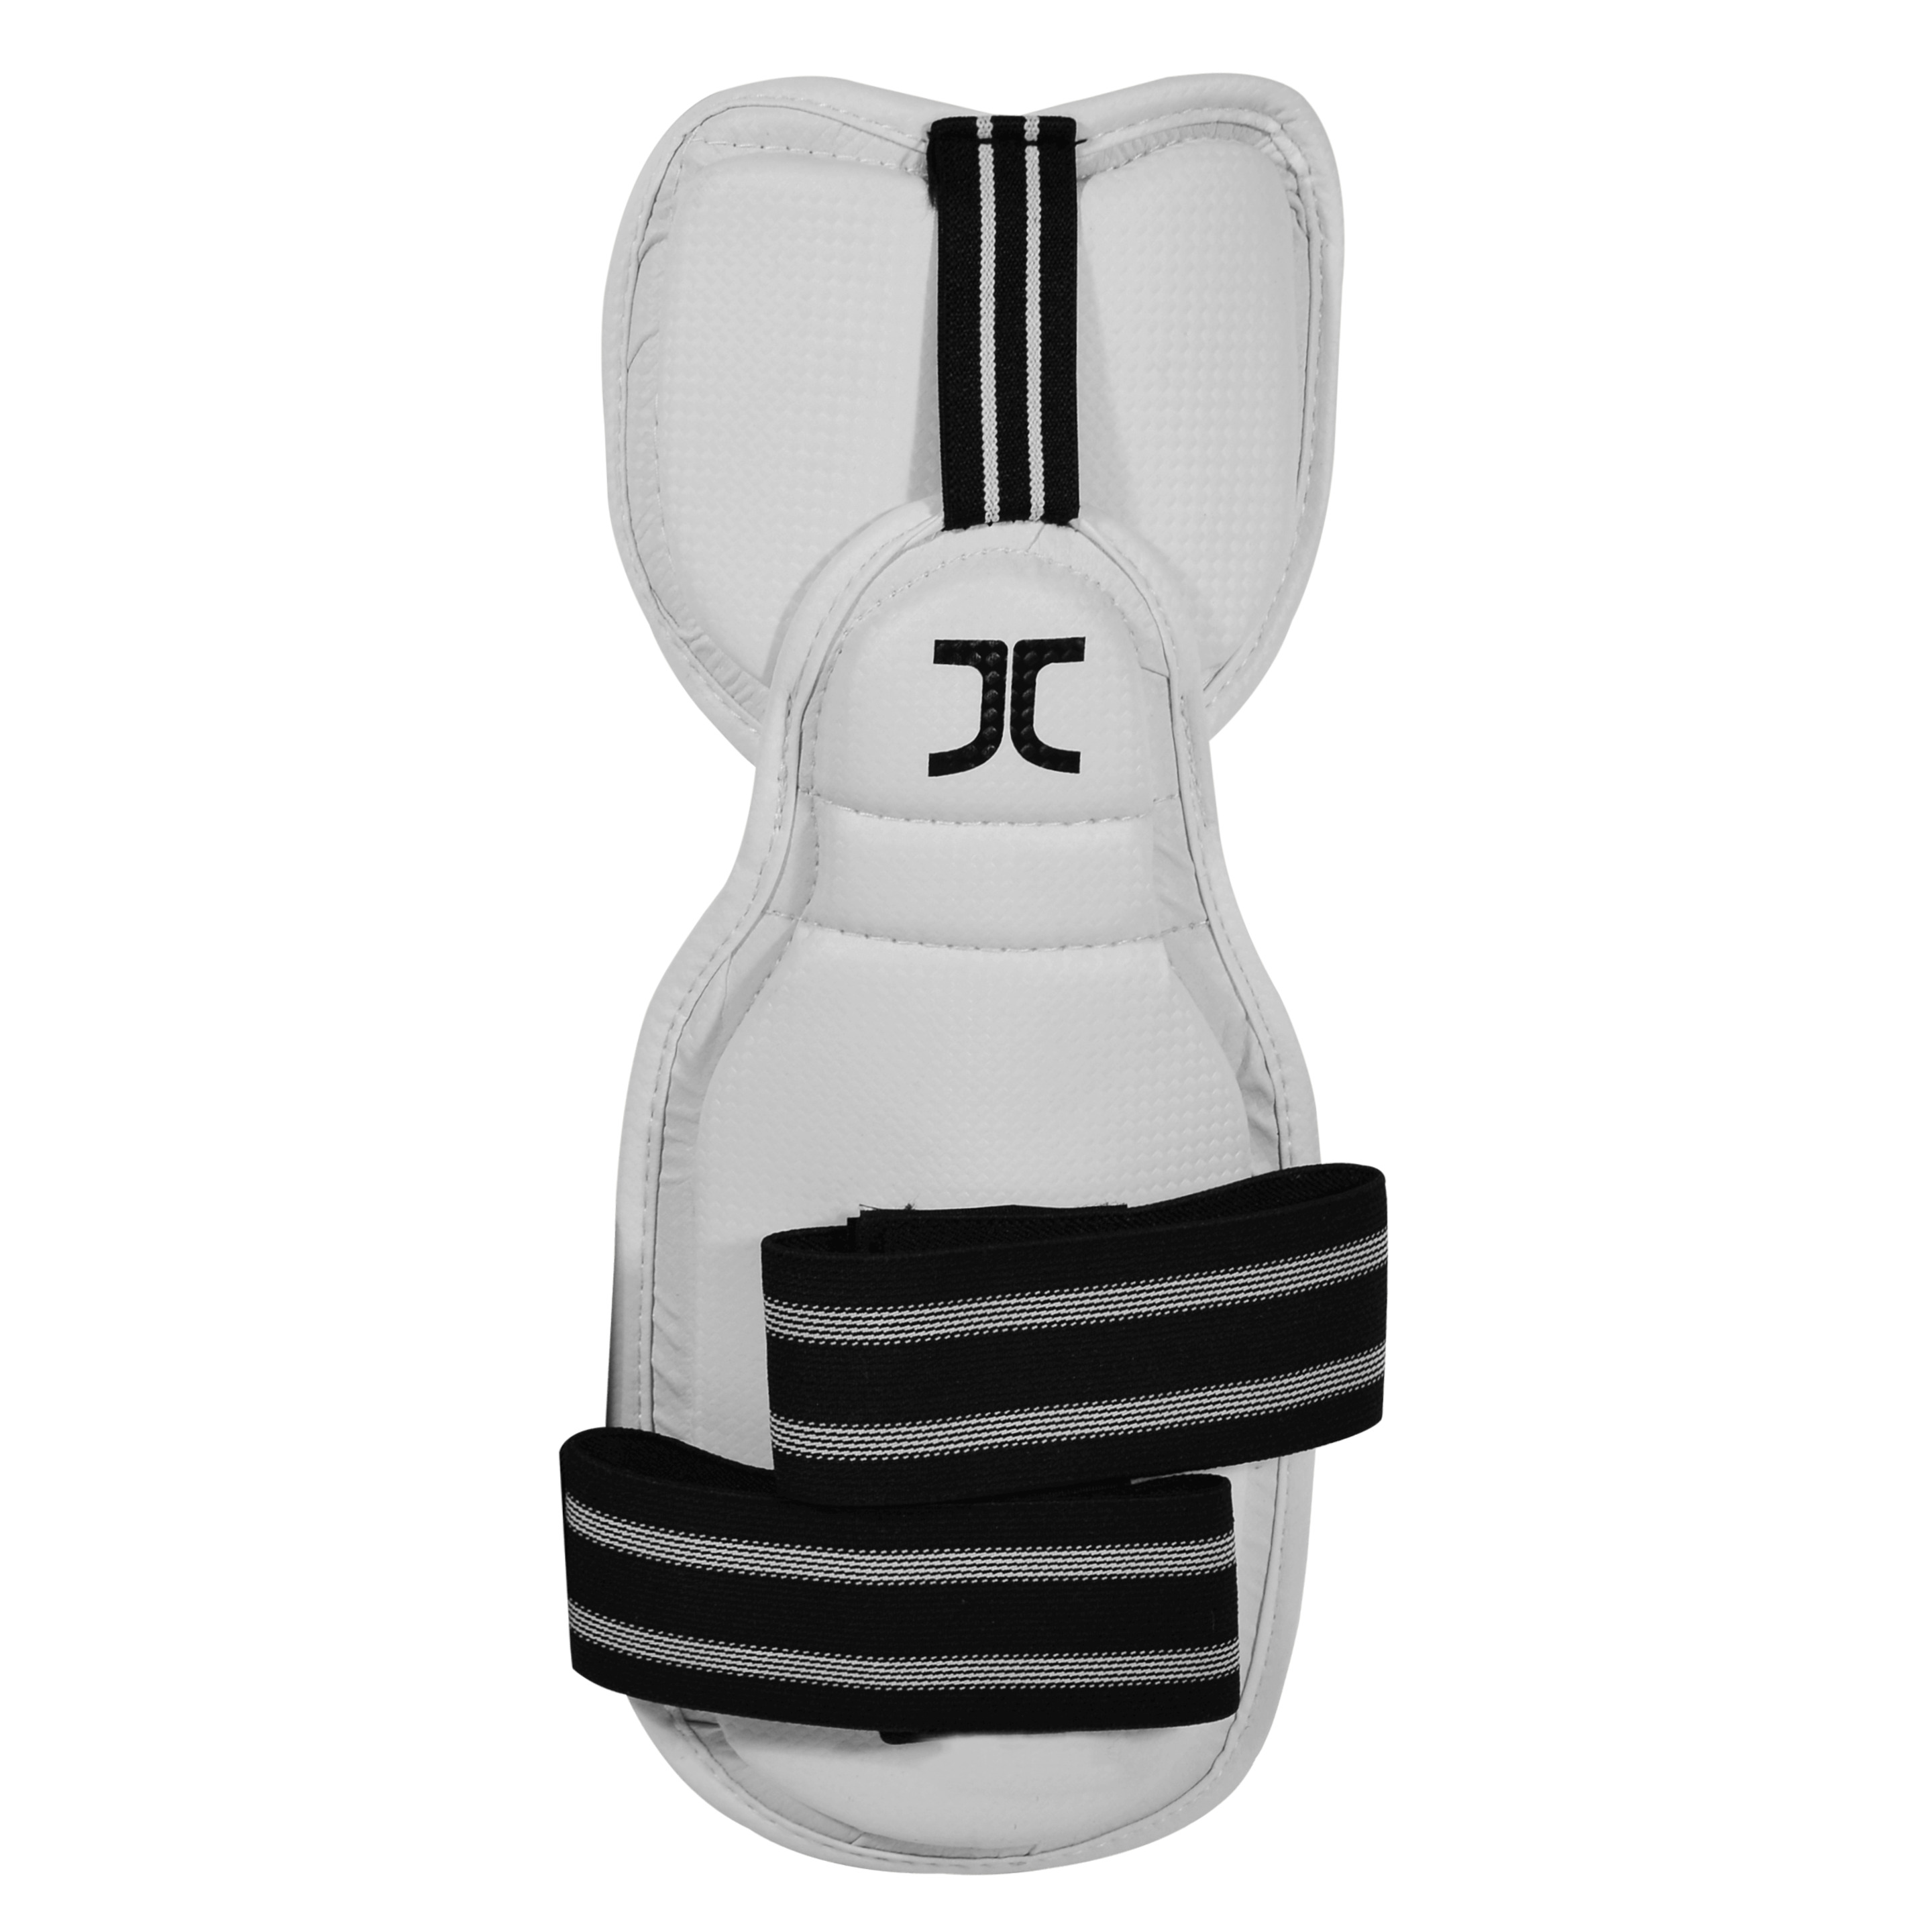 Antebraços De Taekwondo Com Cotovelo Jc - blanco - 